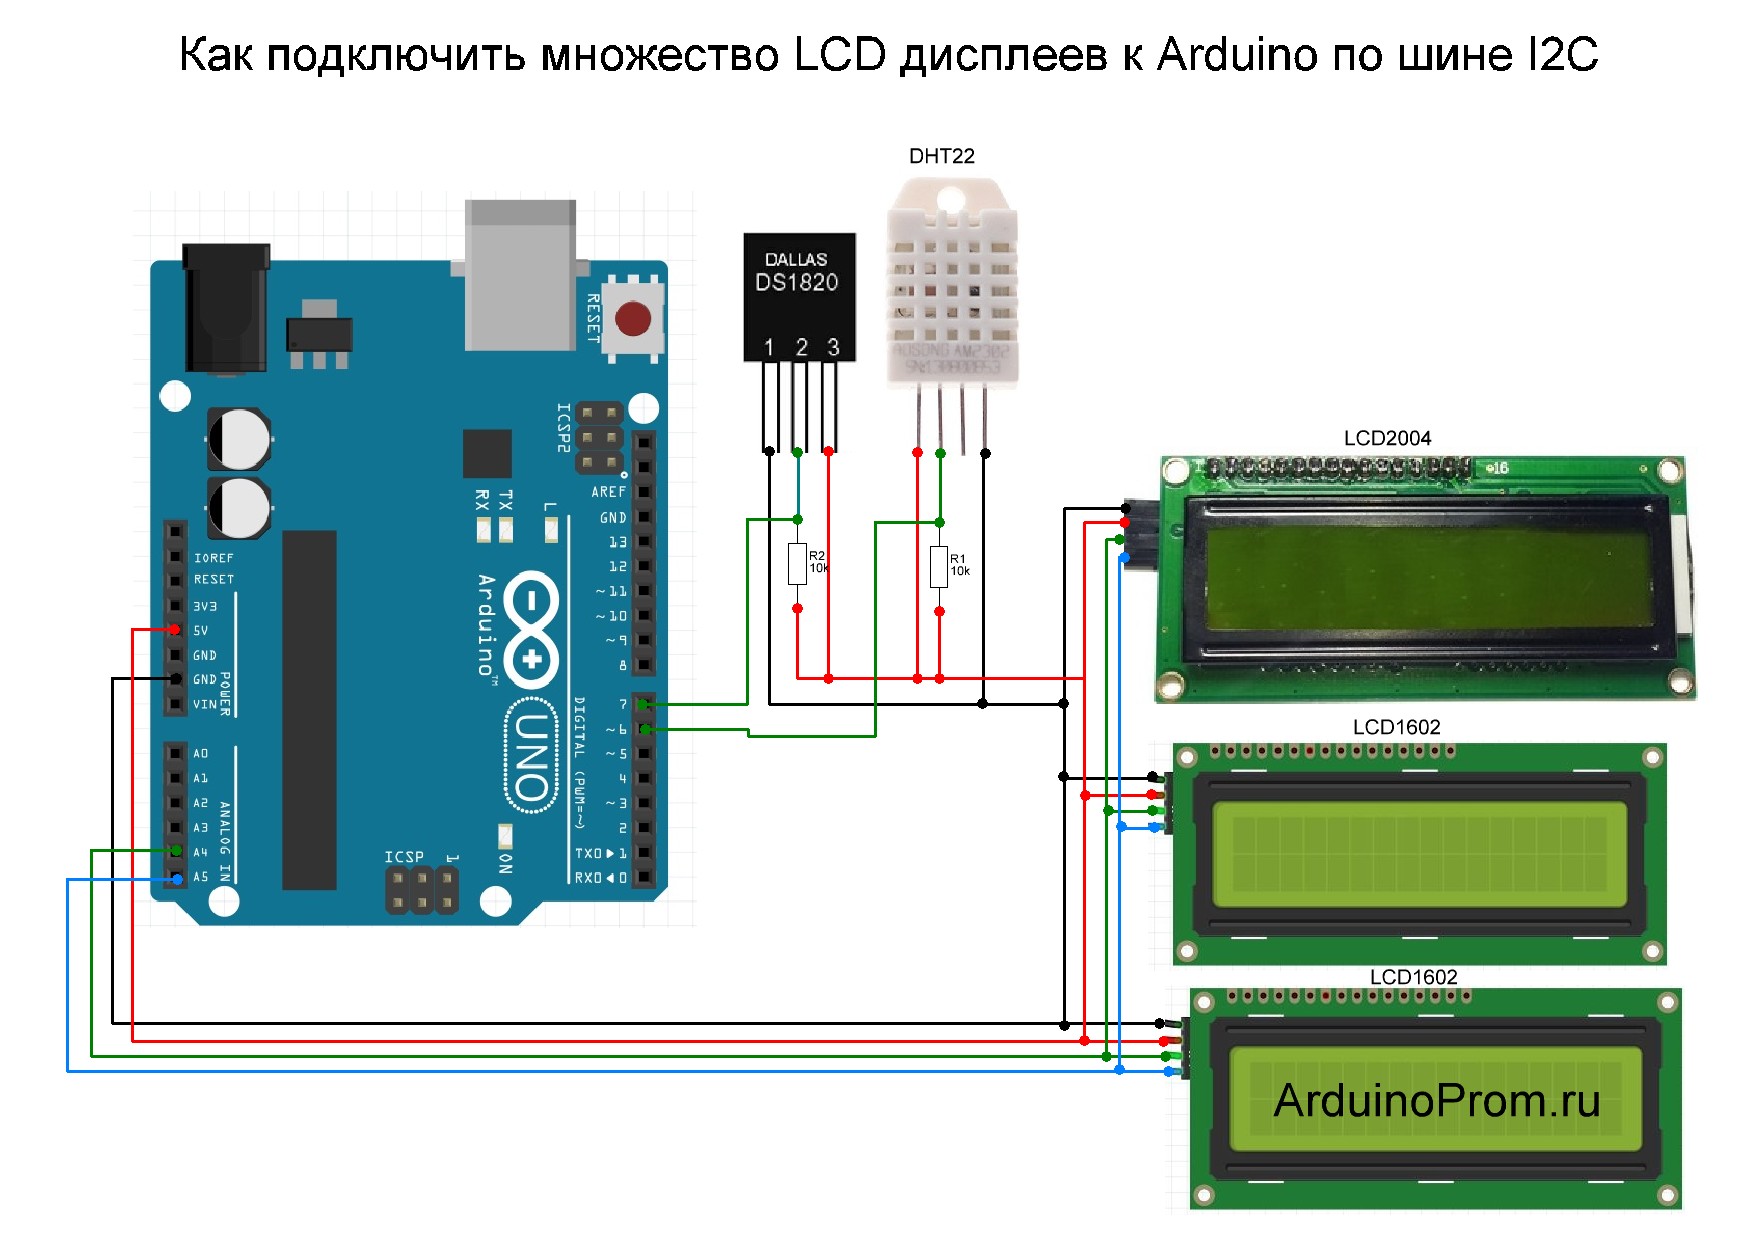 Как подключить множество Lcd дисплеев к Arduino по шине I2c 1298